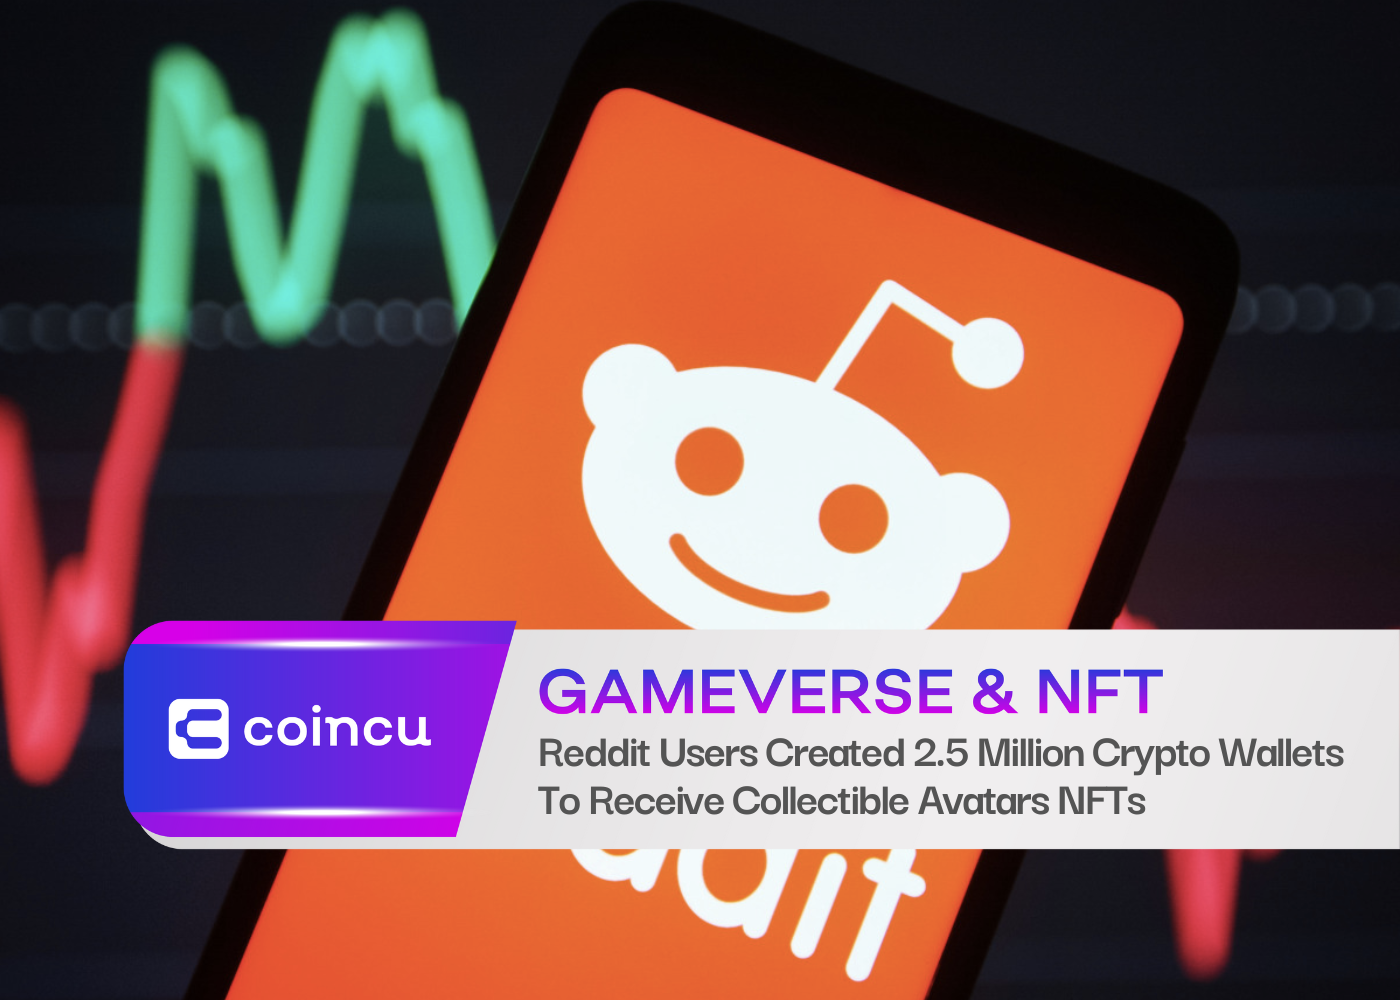 Người dùng Reddit đã tạo 2.5 triệu ví tiền điện tử để nhận NFT hình đại diện có thể sưu tập